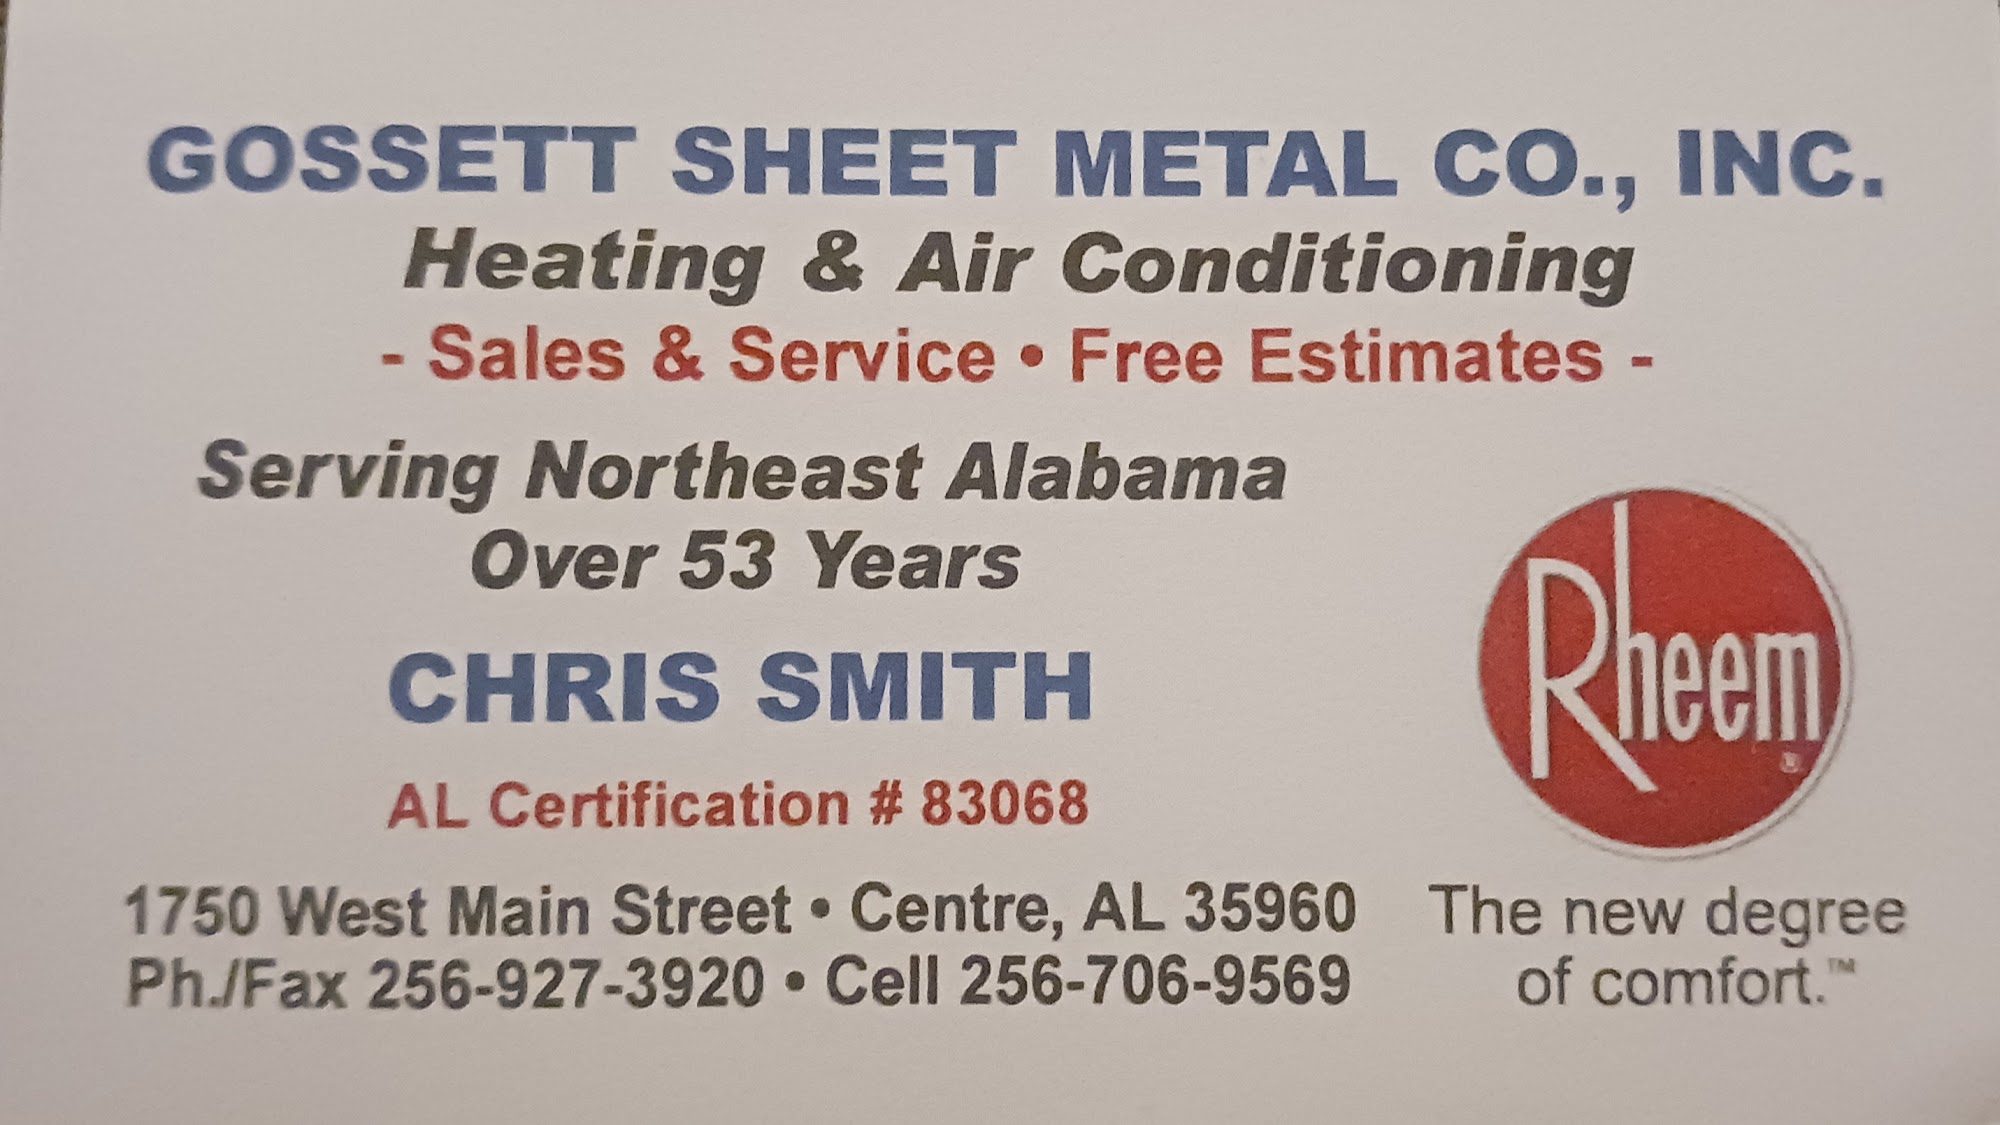 Gossett Sheet Metal 1750 W Main St, Centre Alabama 35960